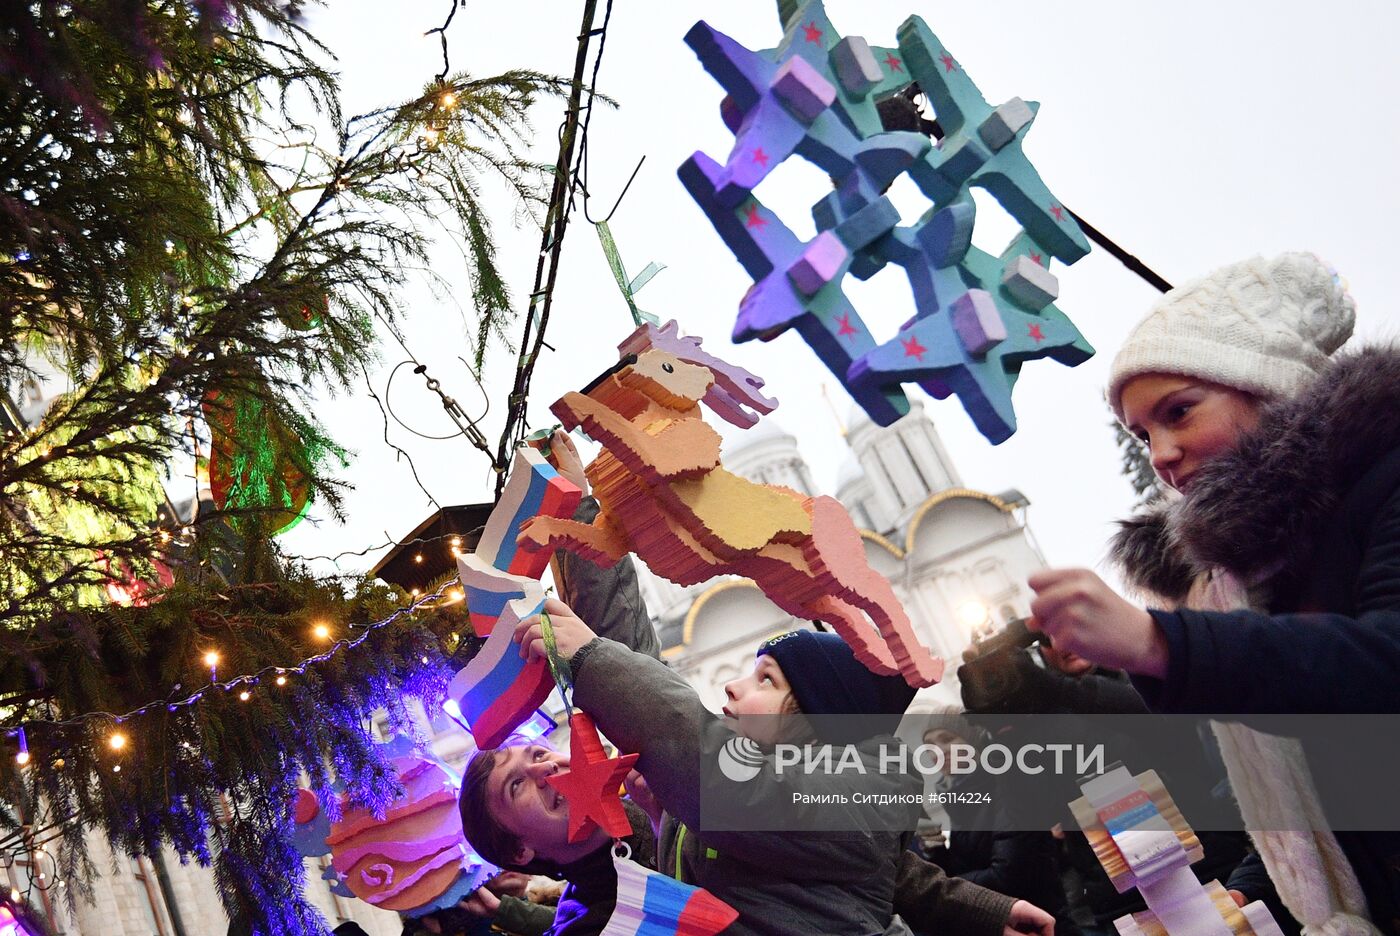 Украшение новогодней елки на Соборной площади Кремля